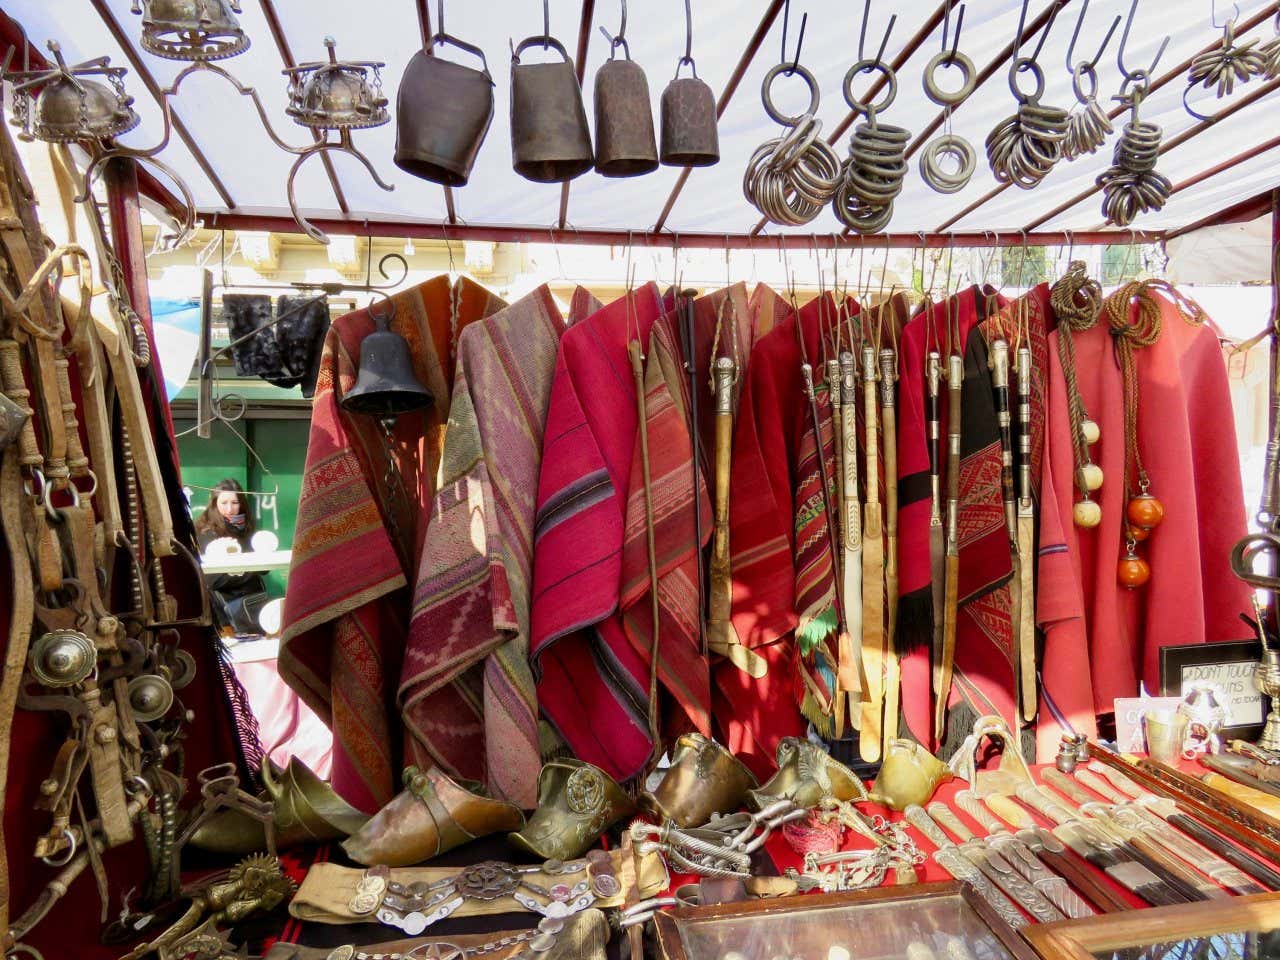 Productos de vestimenta y accesorios típicos argentinos en la Feria de San Telmo